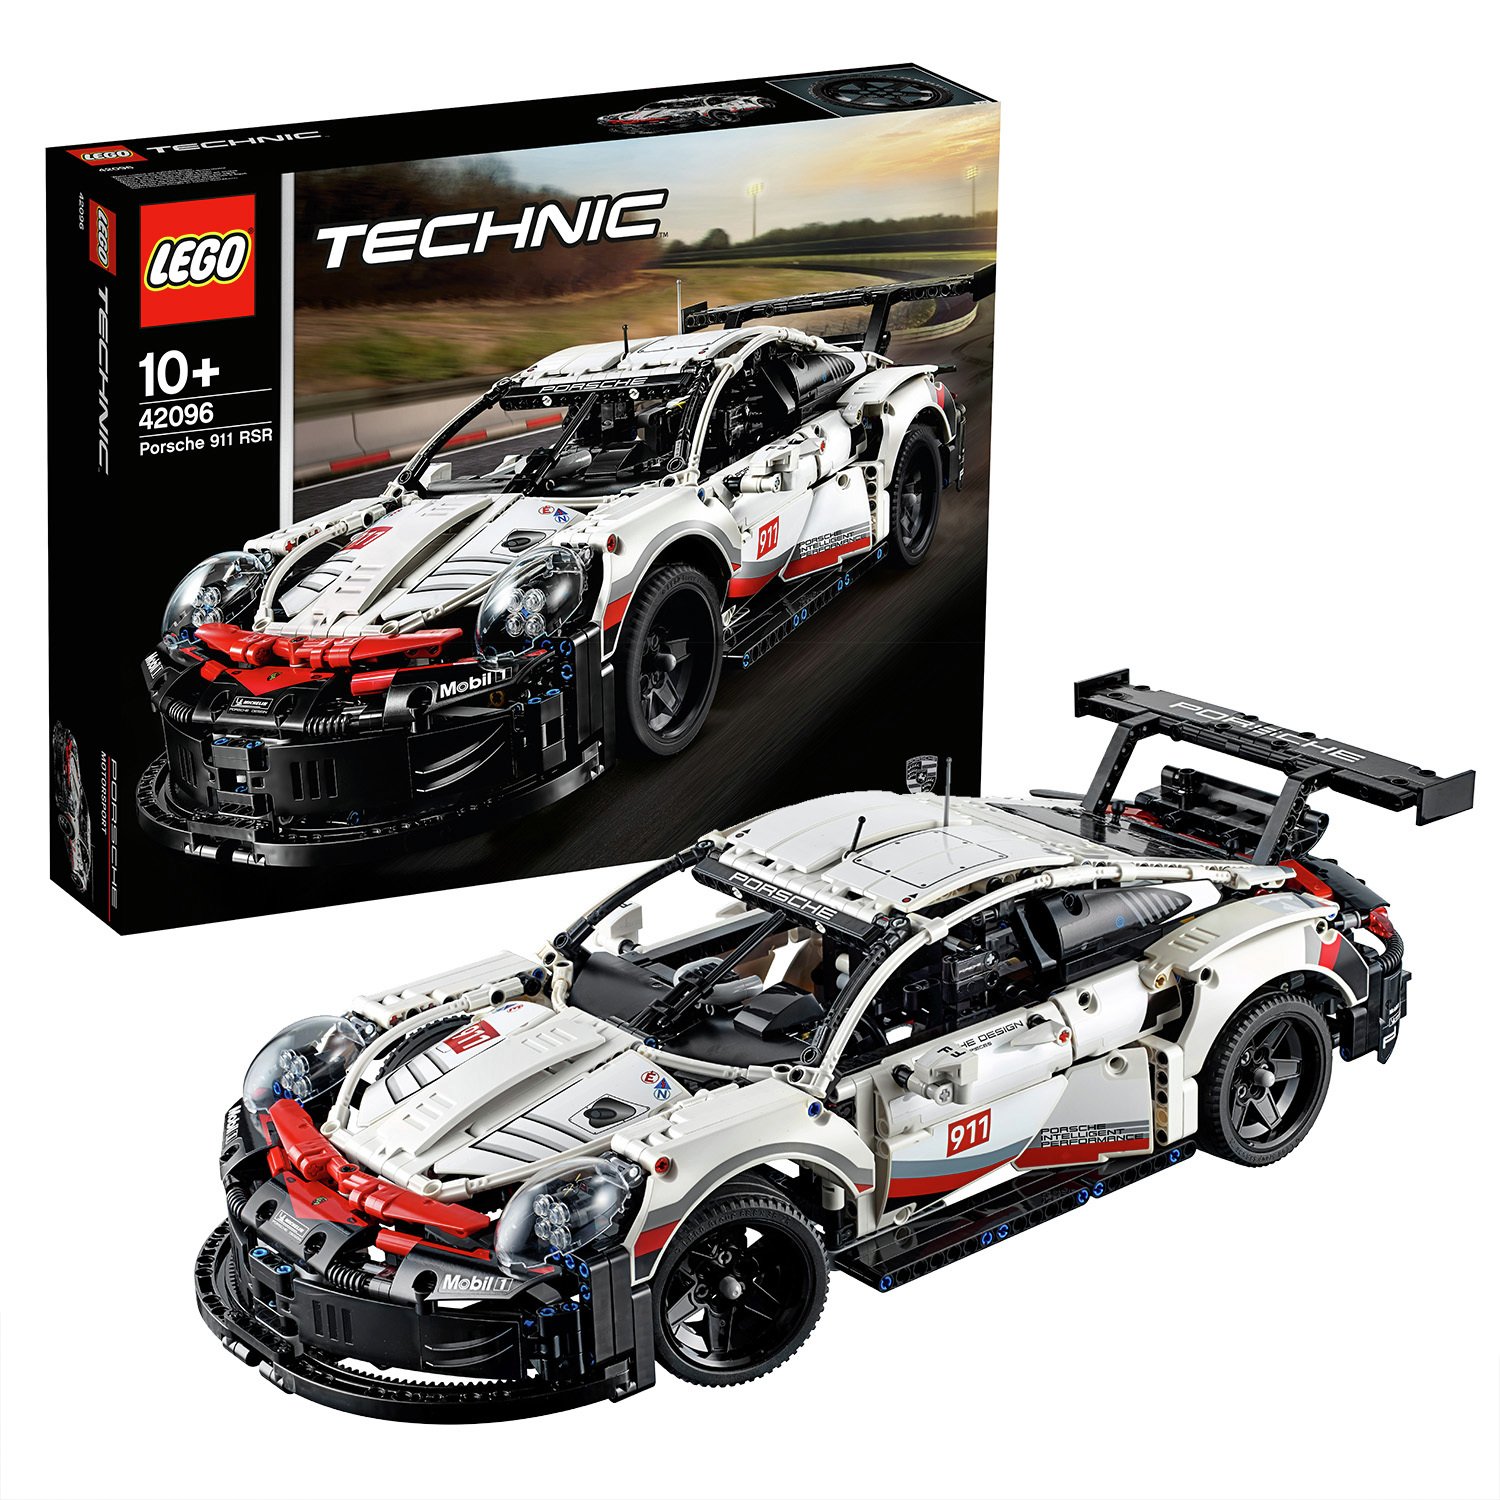 LEGO Technic Porsche 911 RSR Car Replica Model 42096